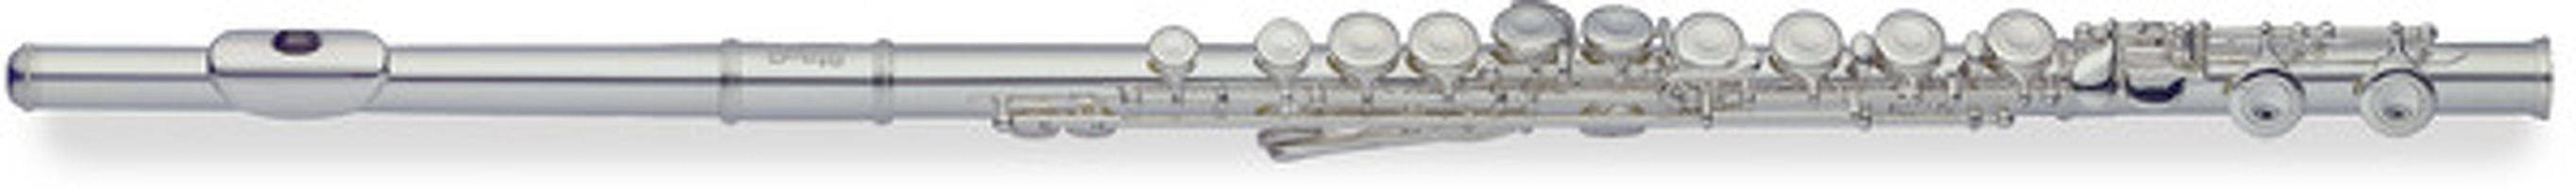 C Flute Sixteen Key Split E Mechanism Offset G: Flute